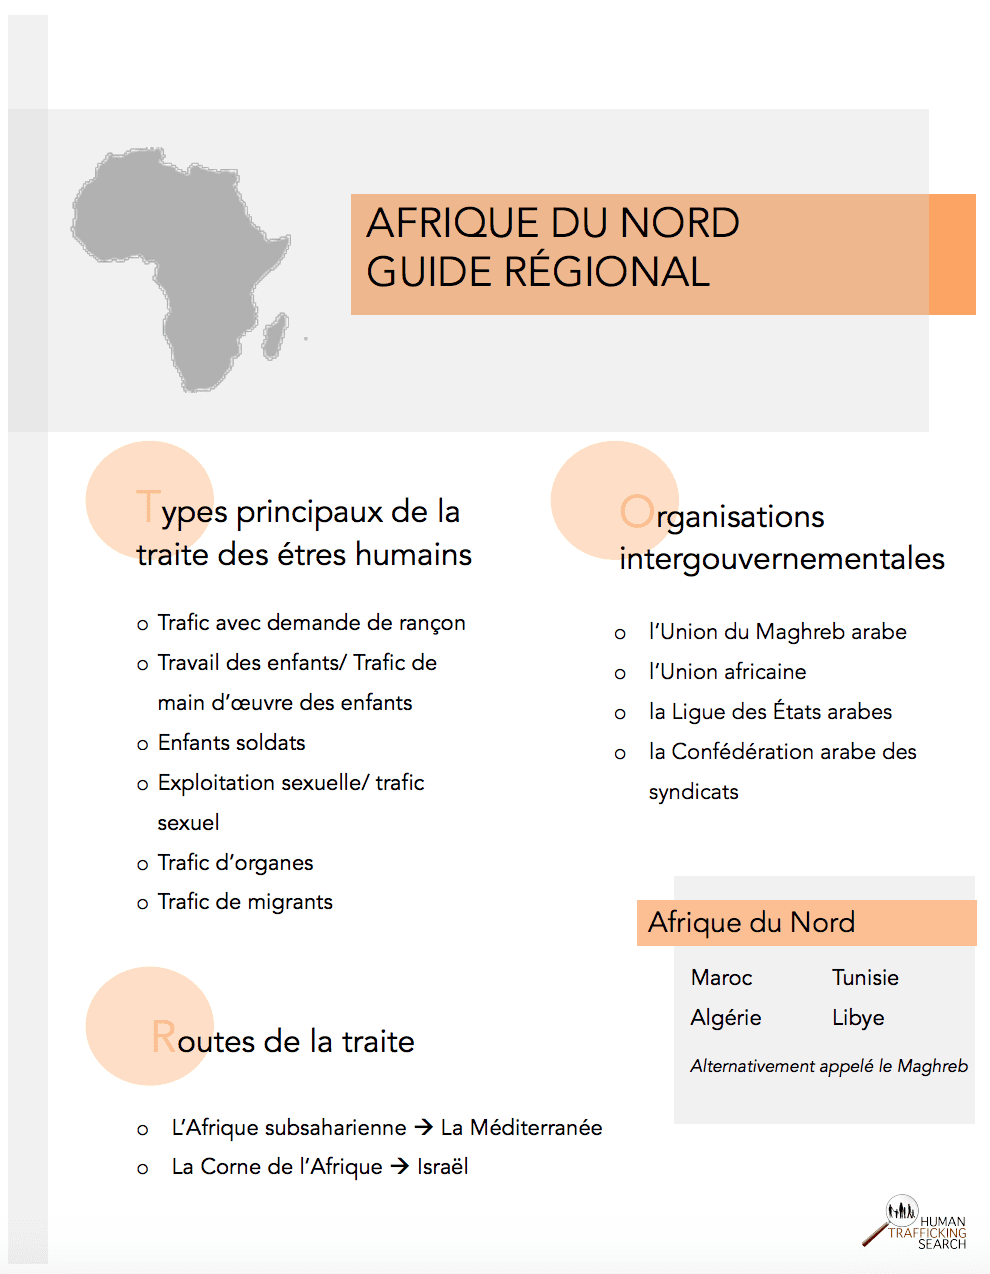 Afrique du Nord Guide Regional (FR), 2017